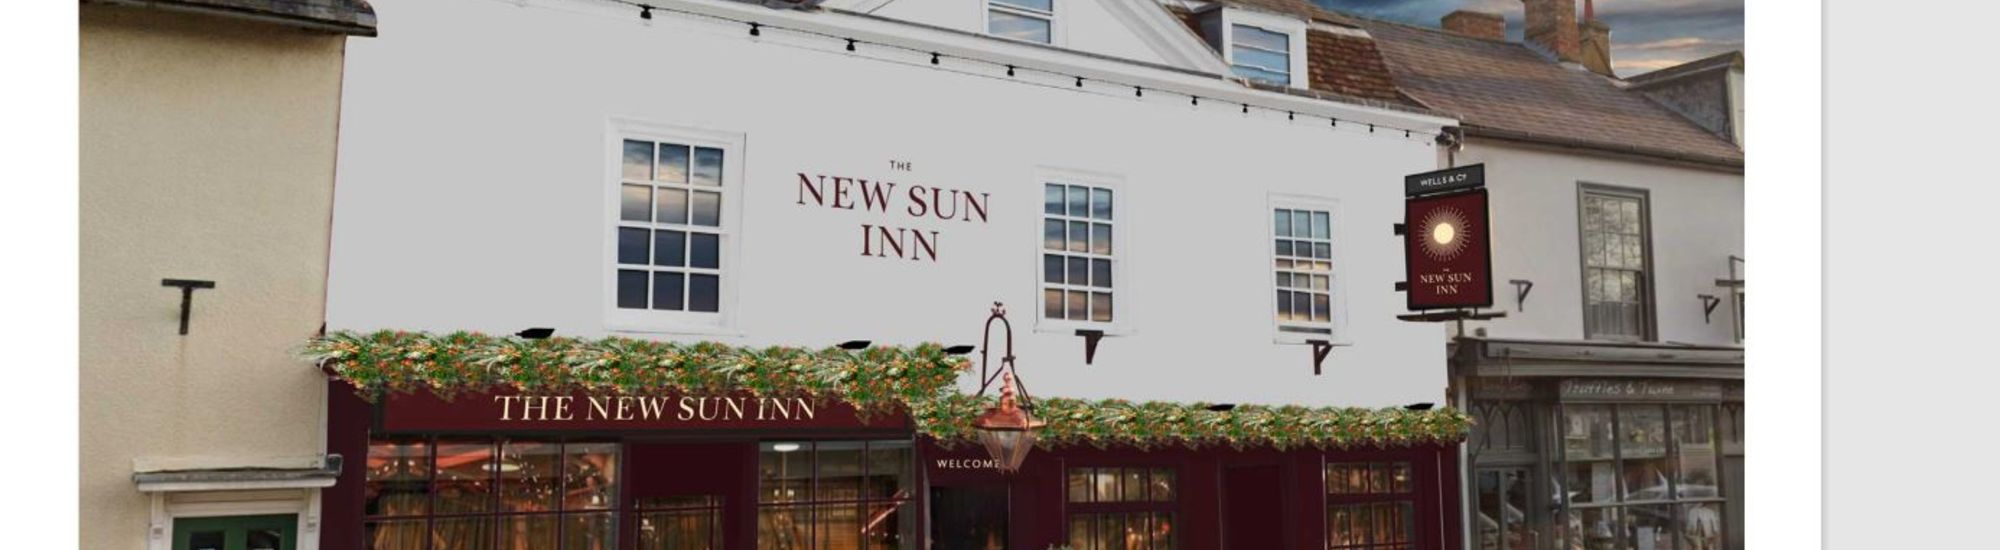 The New Sun Inn, Kimbolton